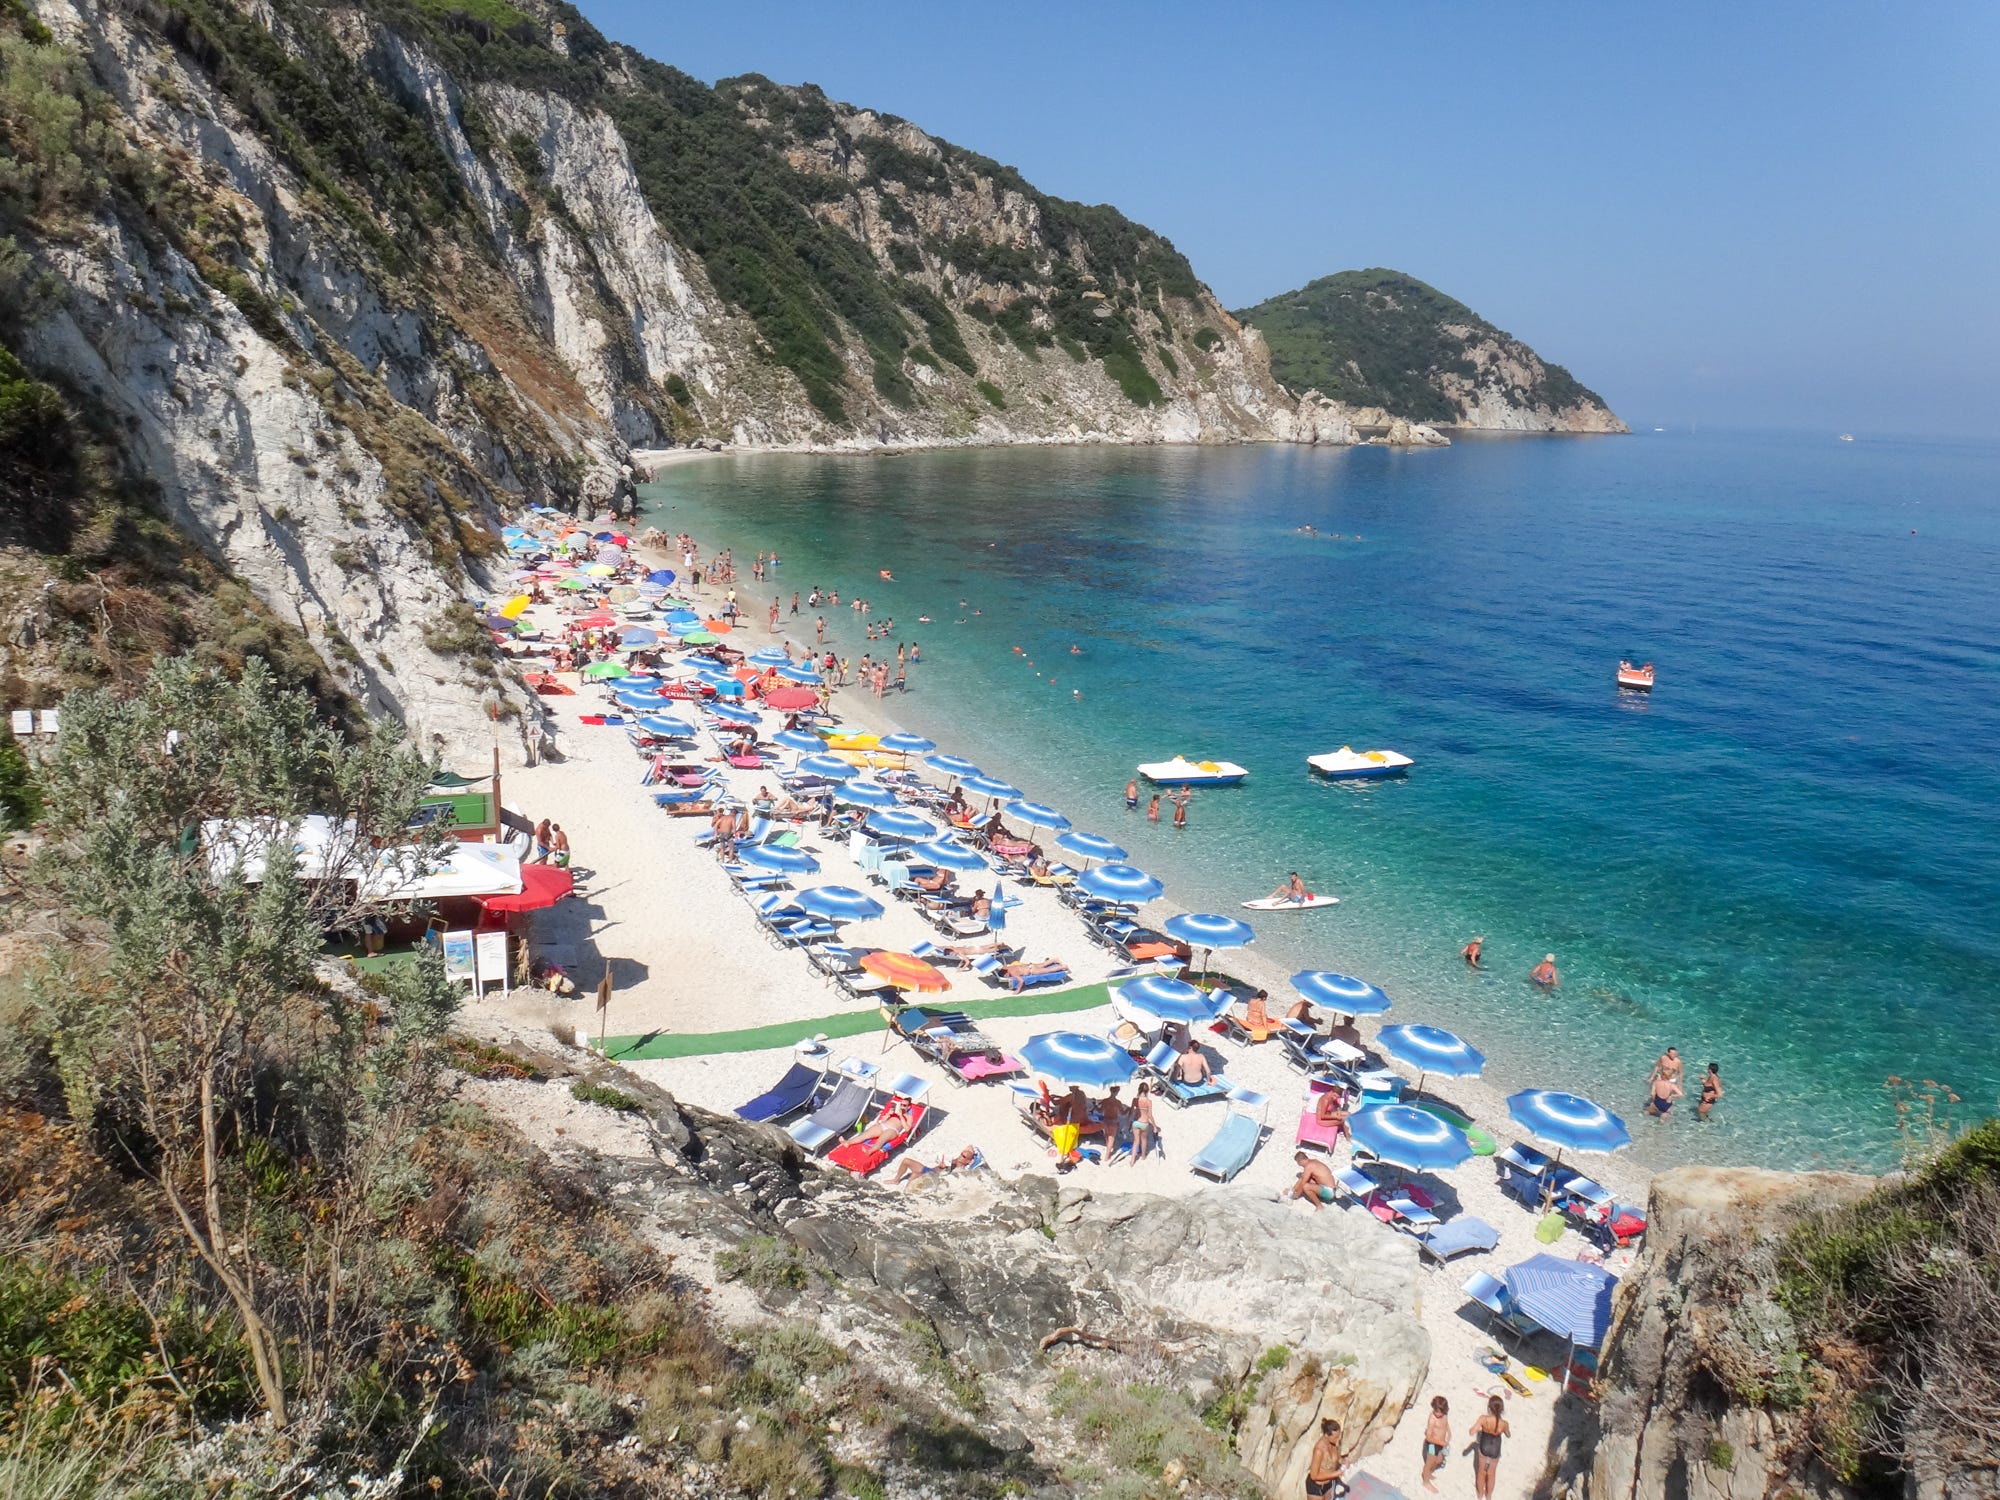 Blick auf die Insel Elba mit Steinen, Sandstränden mit Sonnenschirmen und Handtüchern und klarem, blauen Wasser